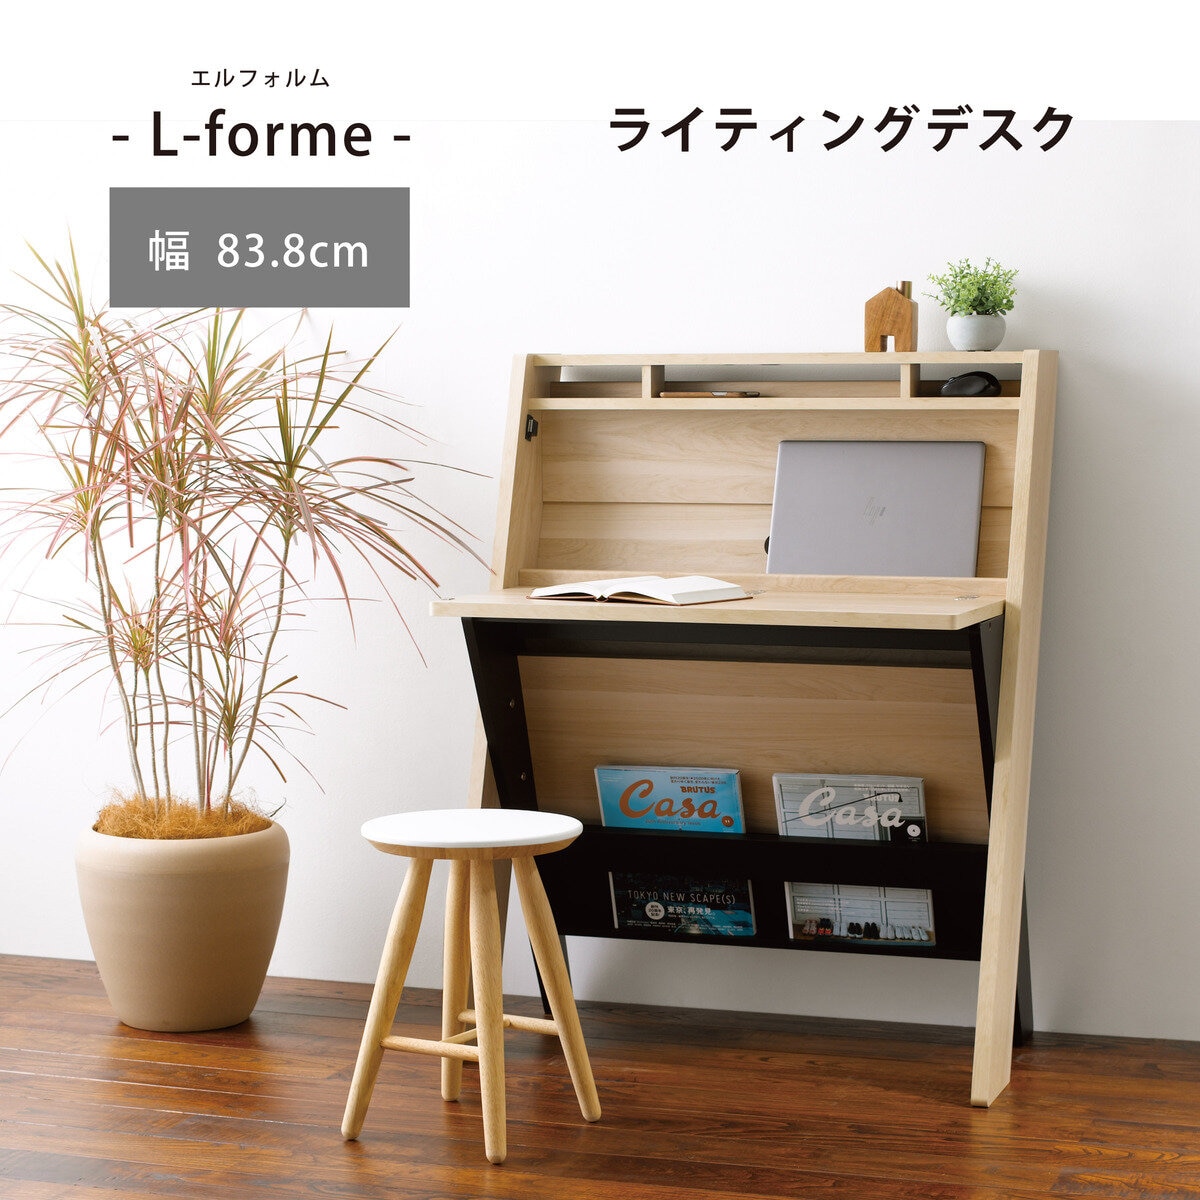 朝日木材加工 L-forme ライティングデスク LFM-1185DE-NA | Costco Japan